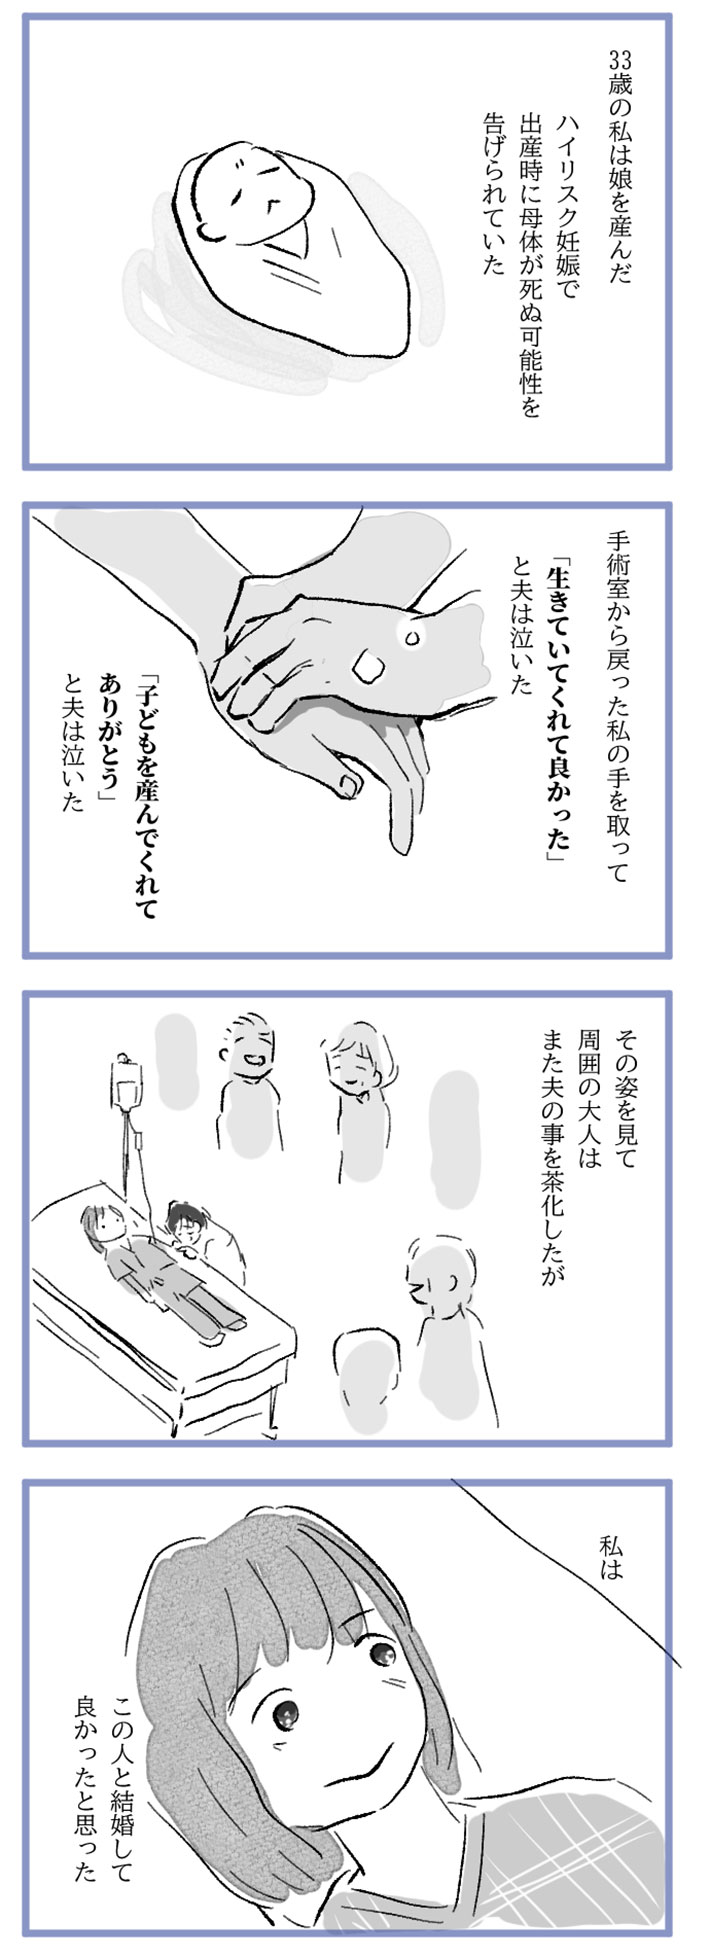 水谷アスさんの漫画作品10